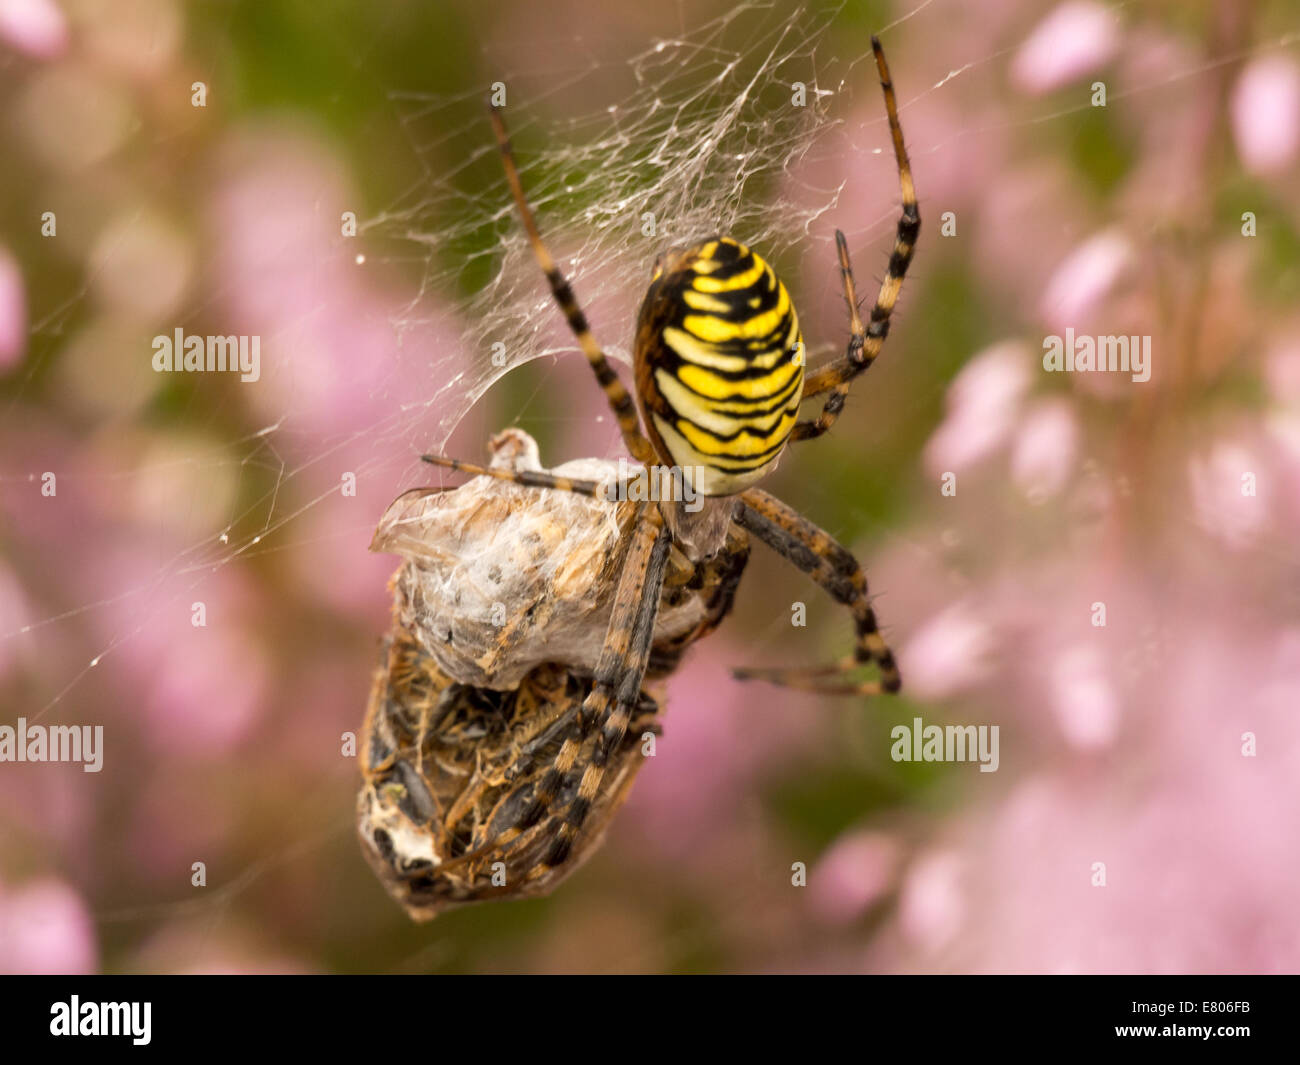 Grosse araignée colorée avec les proies sur une araignée. De belles couleurs de lande en arrière-plan. Banque D'Images